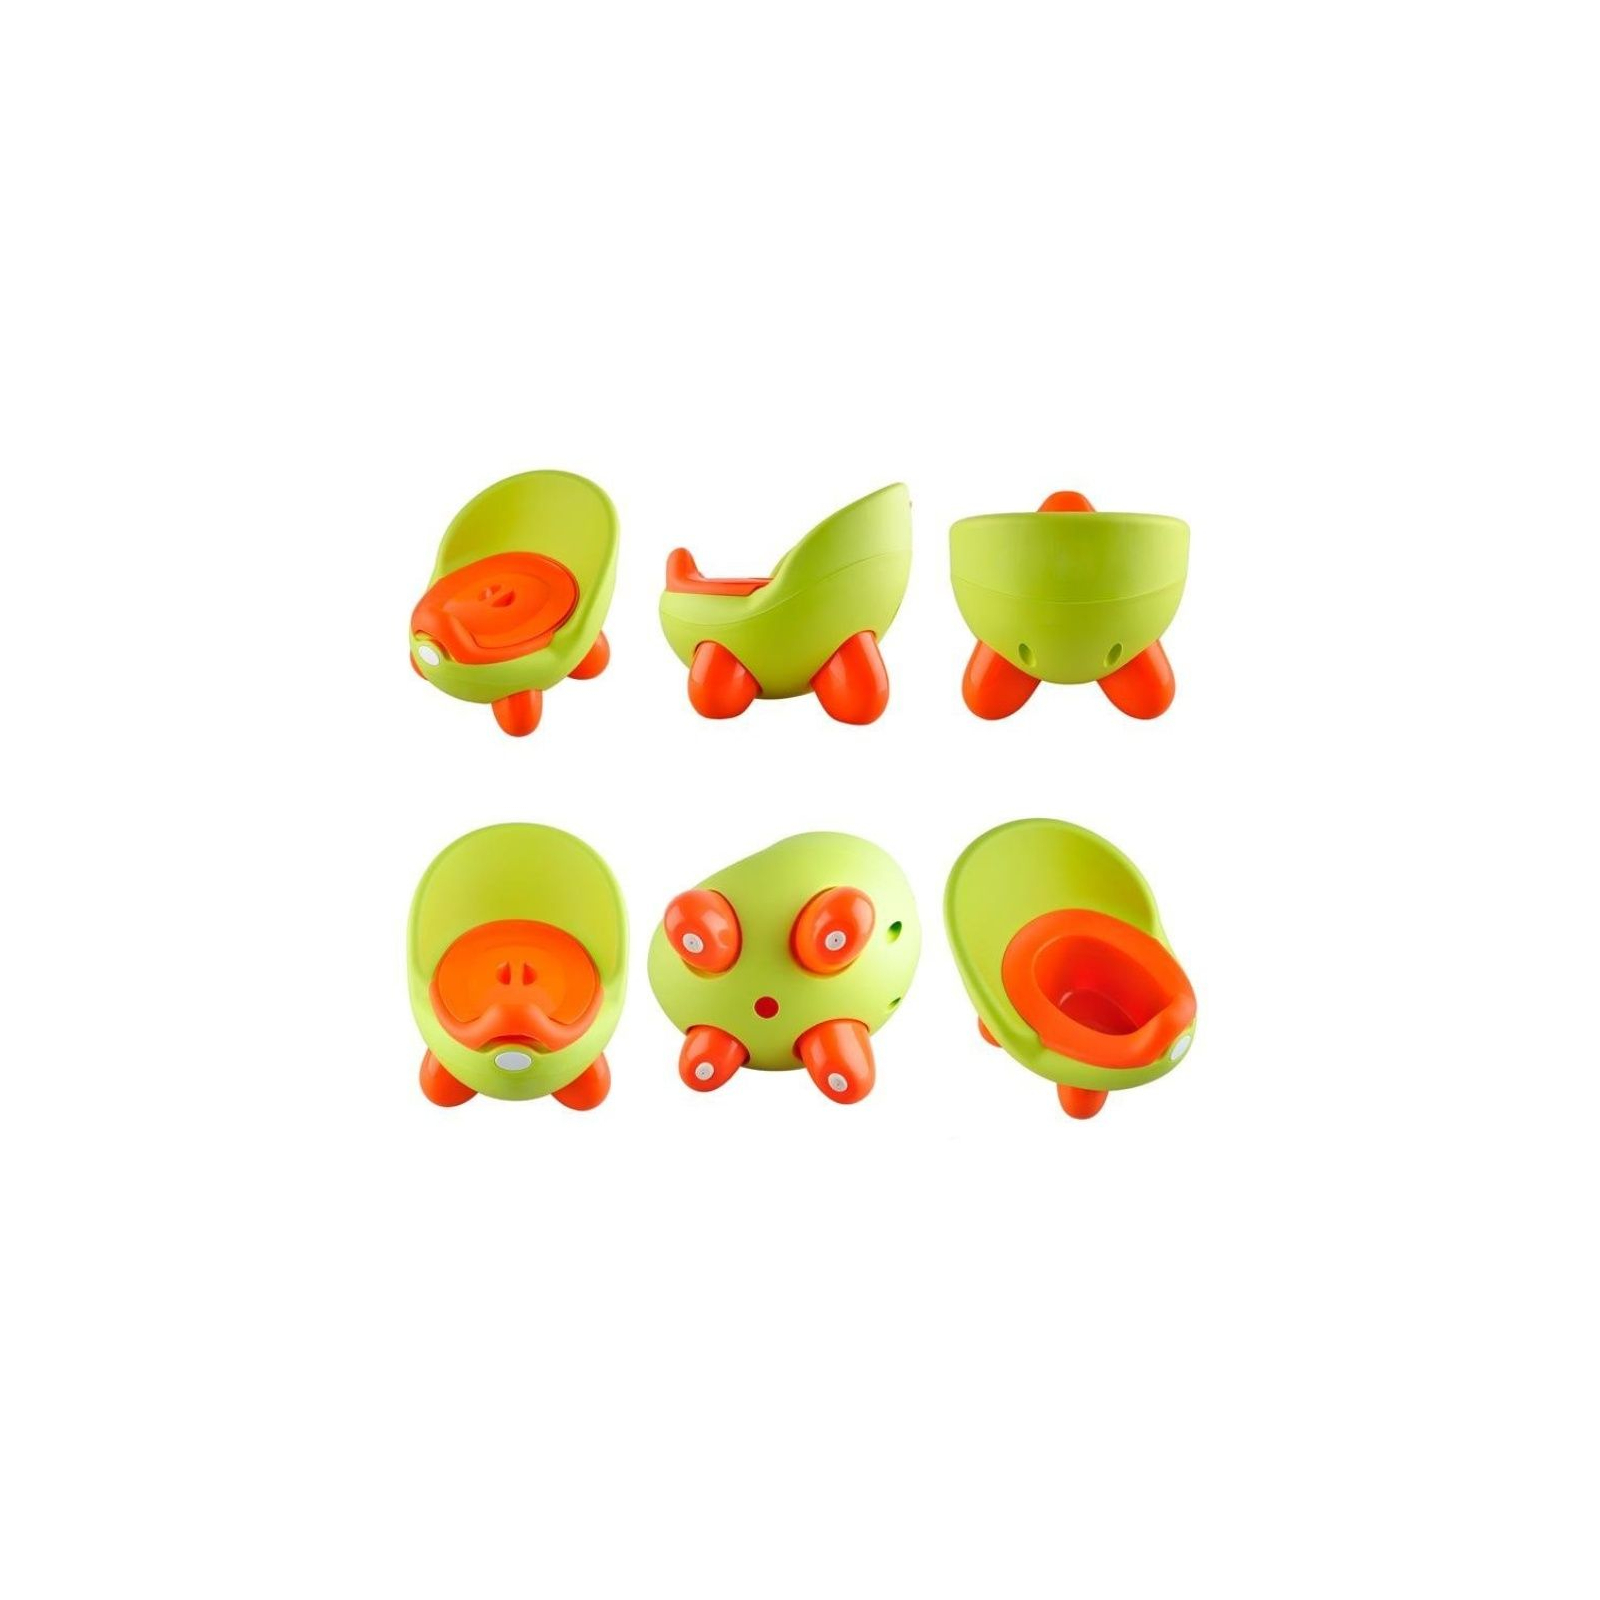 Горшок Babyhood Кью Кью зелёно-оранжевый (BH-105G) изображение 2